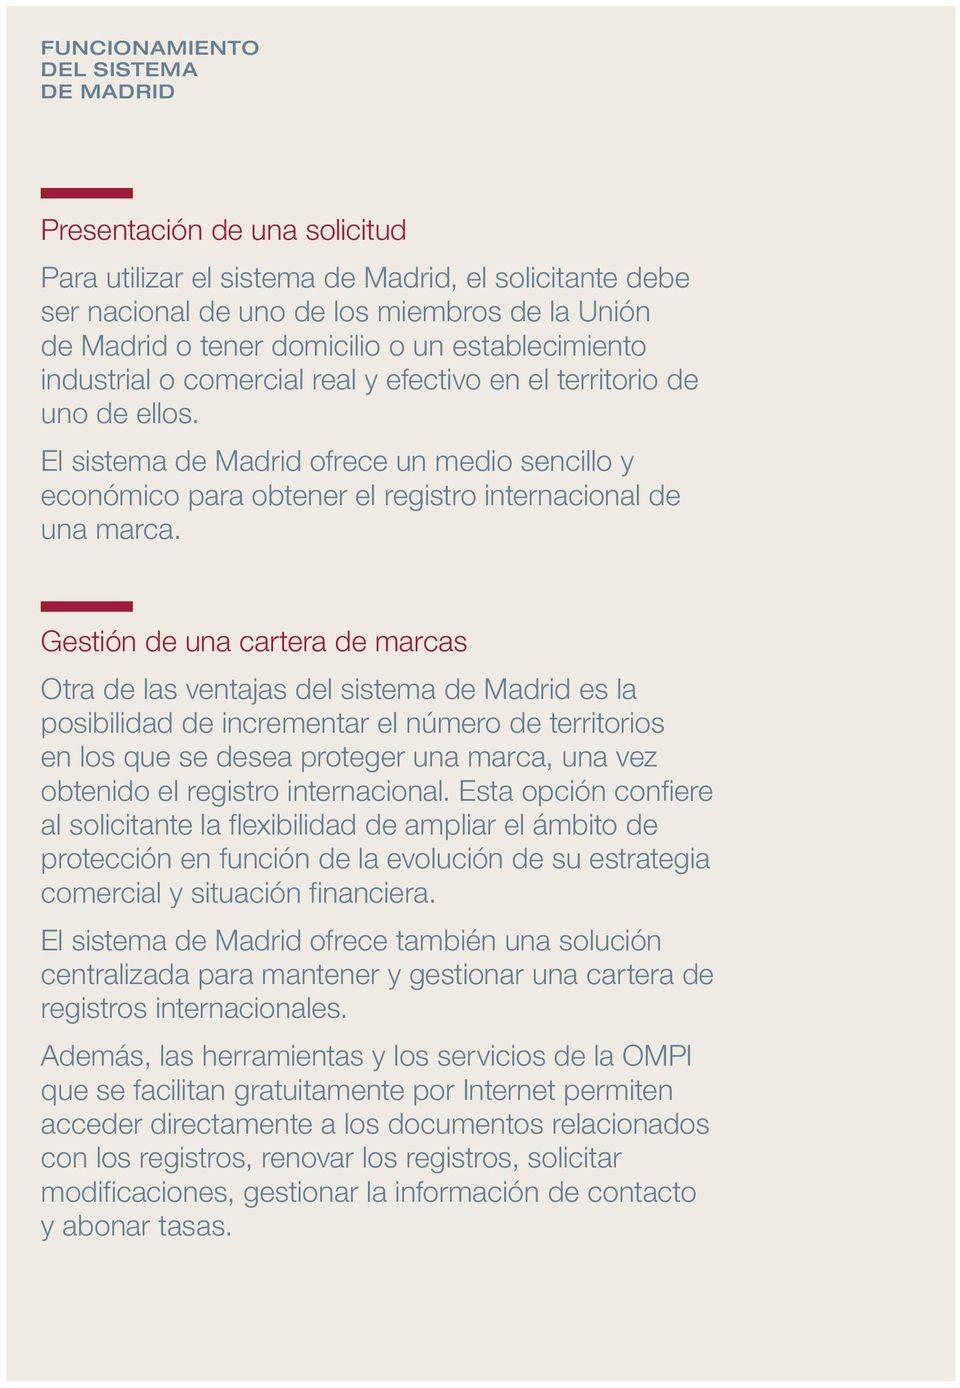 El sistema de Madrid ofrece un medio sencillo y económico para obtener el registro internacional de una marca.